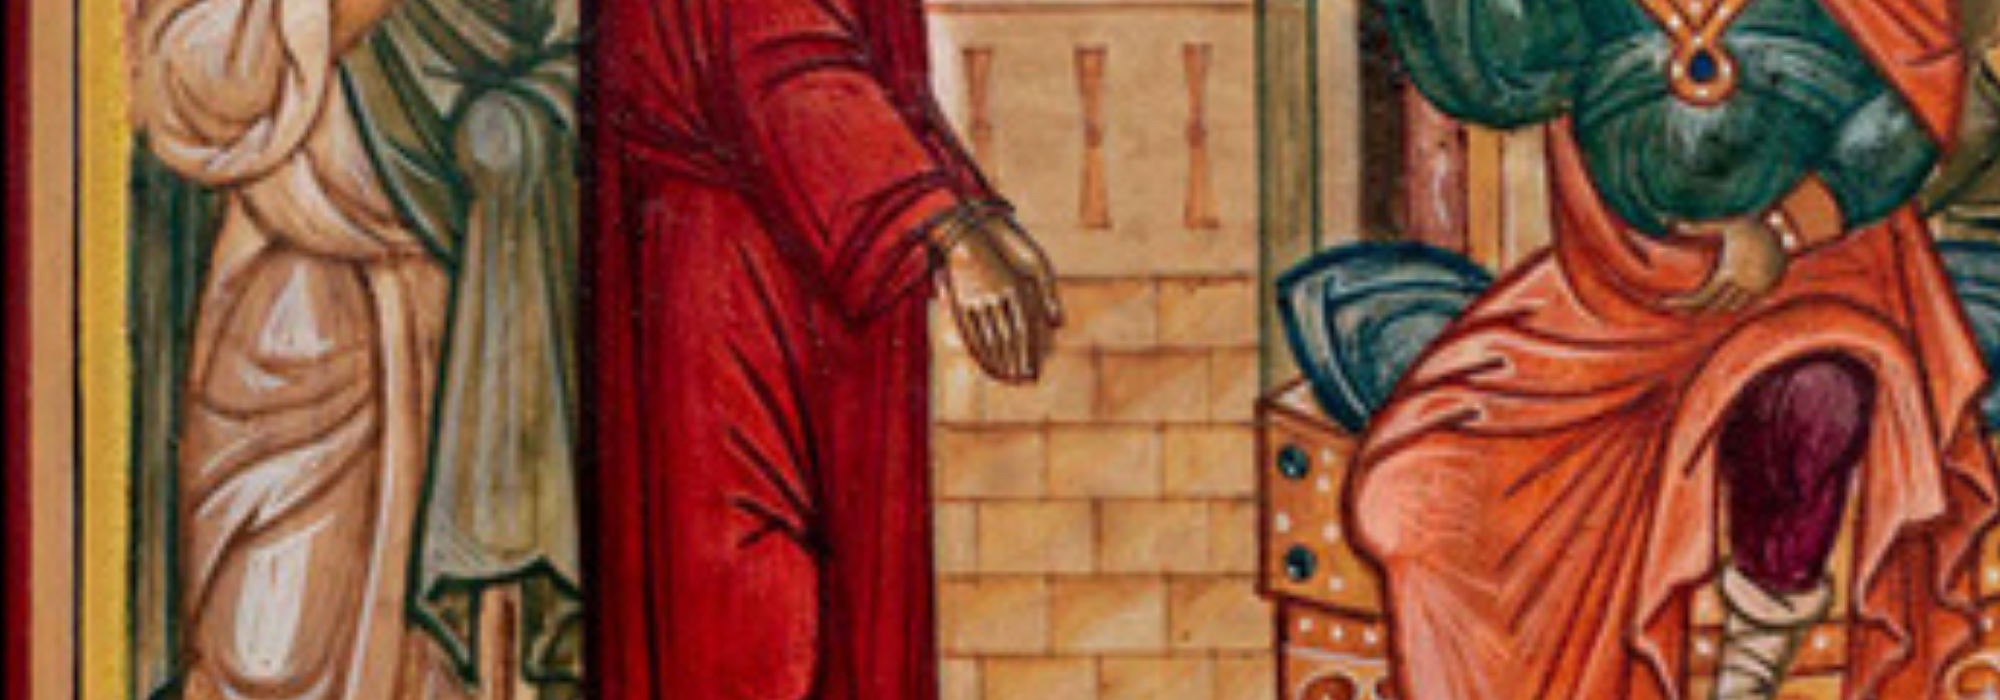 1.MärzHeader - Jesus sind die Hände gebunden.